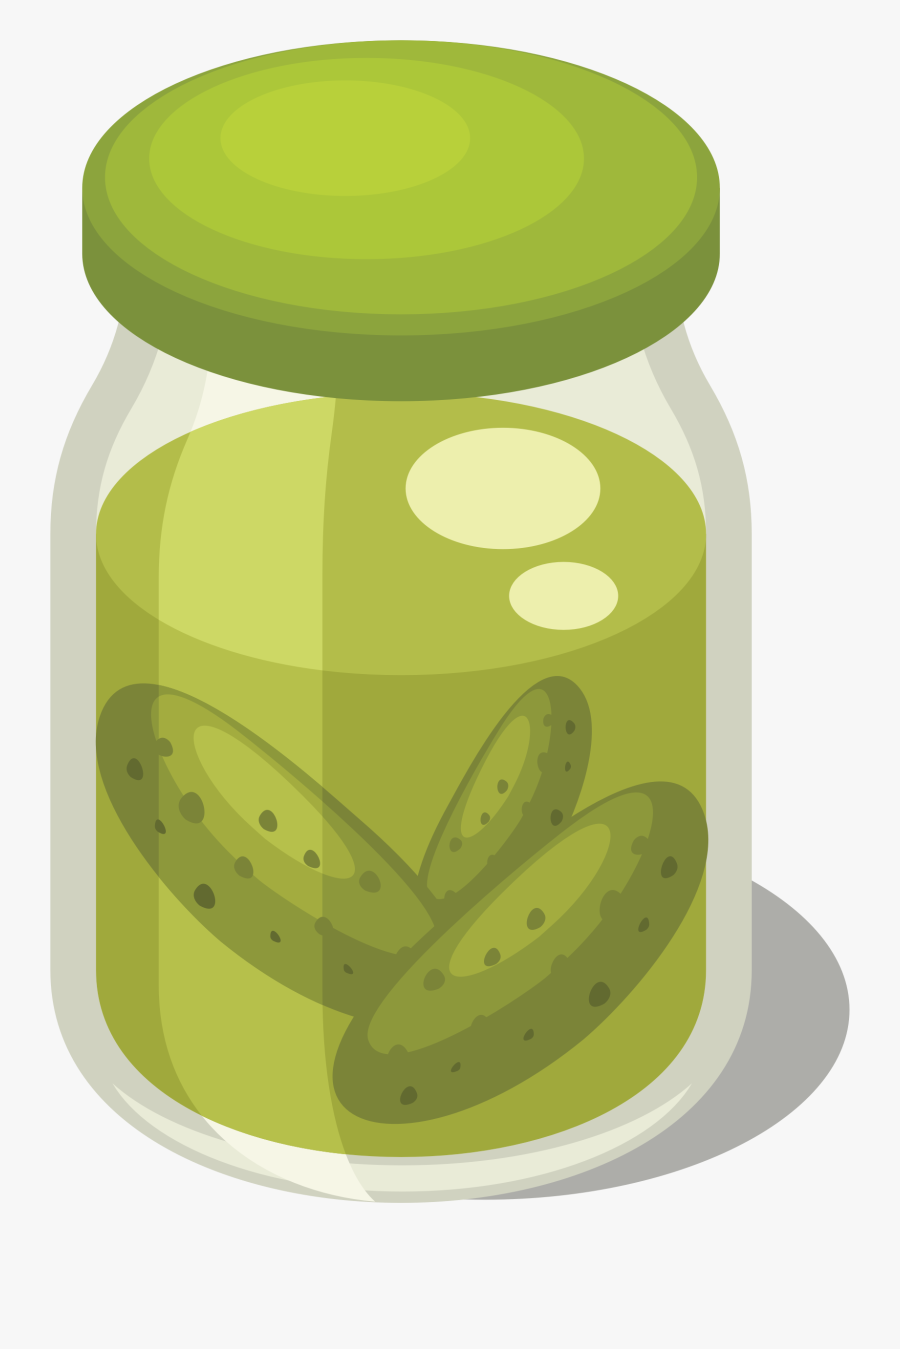 A Public Domain Image Pickles Clipart - Clipart Jar Of Pickles, Transparent Clipart